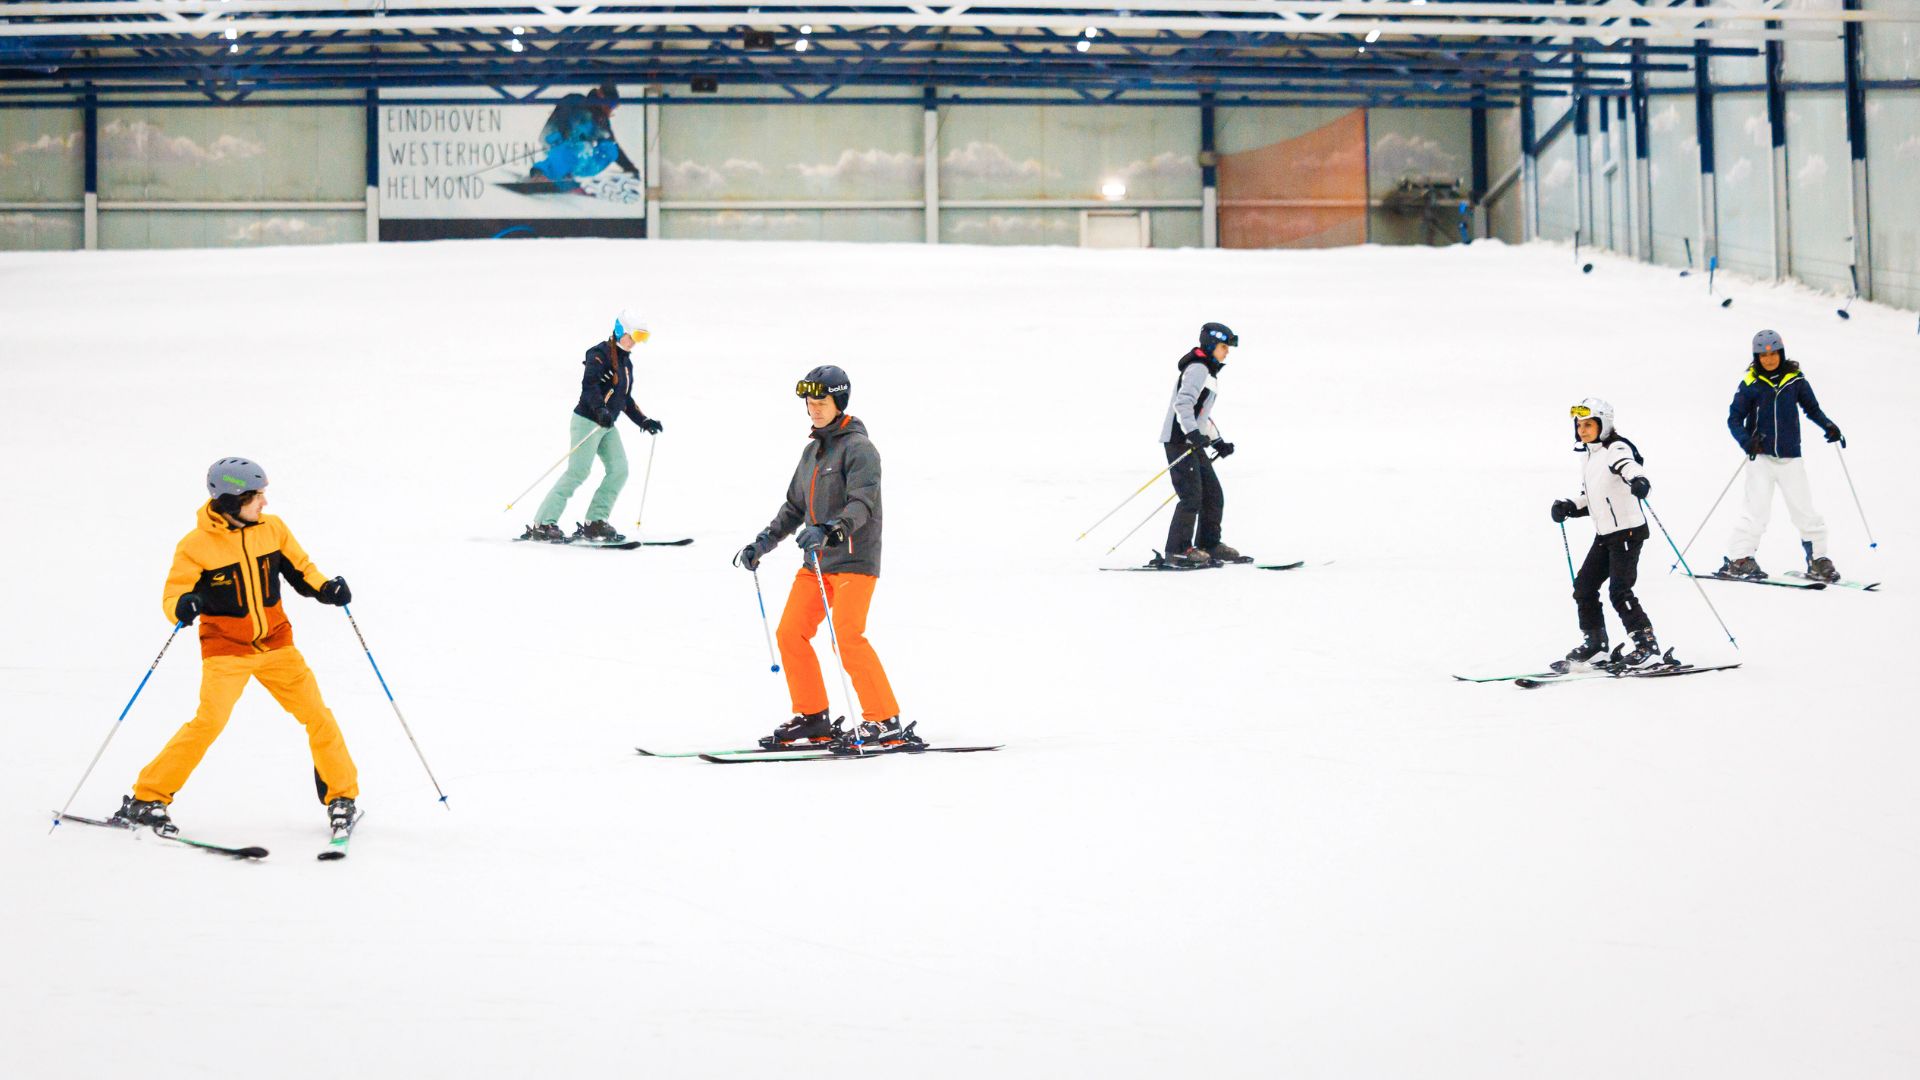 Indoor skiën op echte sneeuw. De cursisten volgen van de skileraar tijdens de skiles.